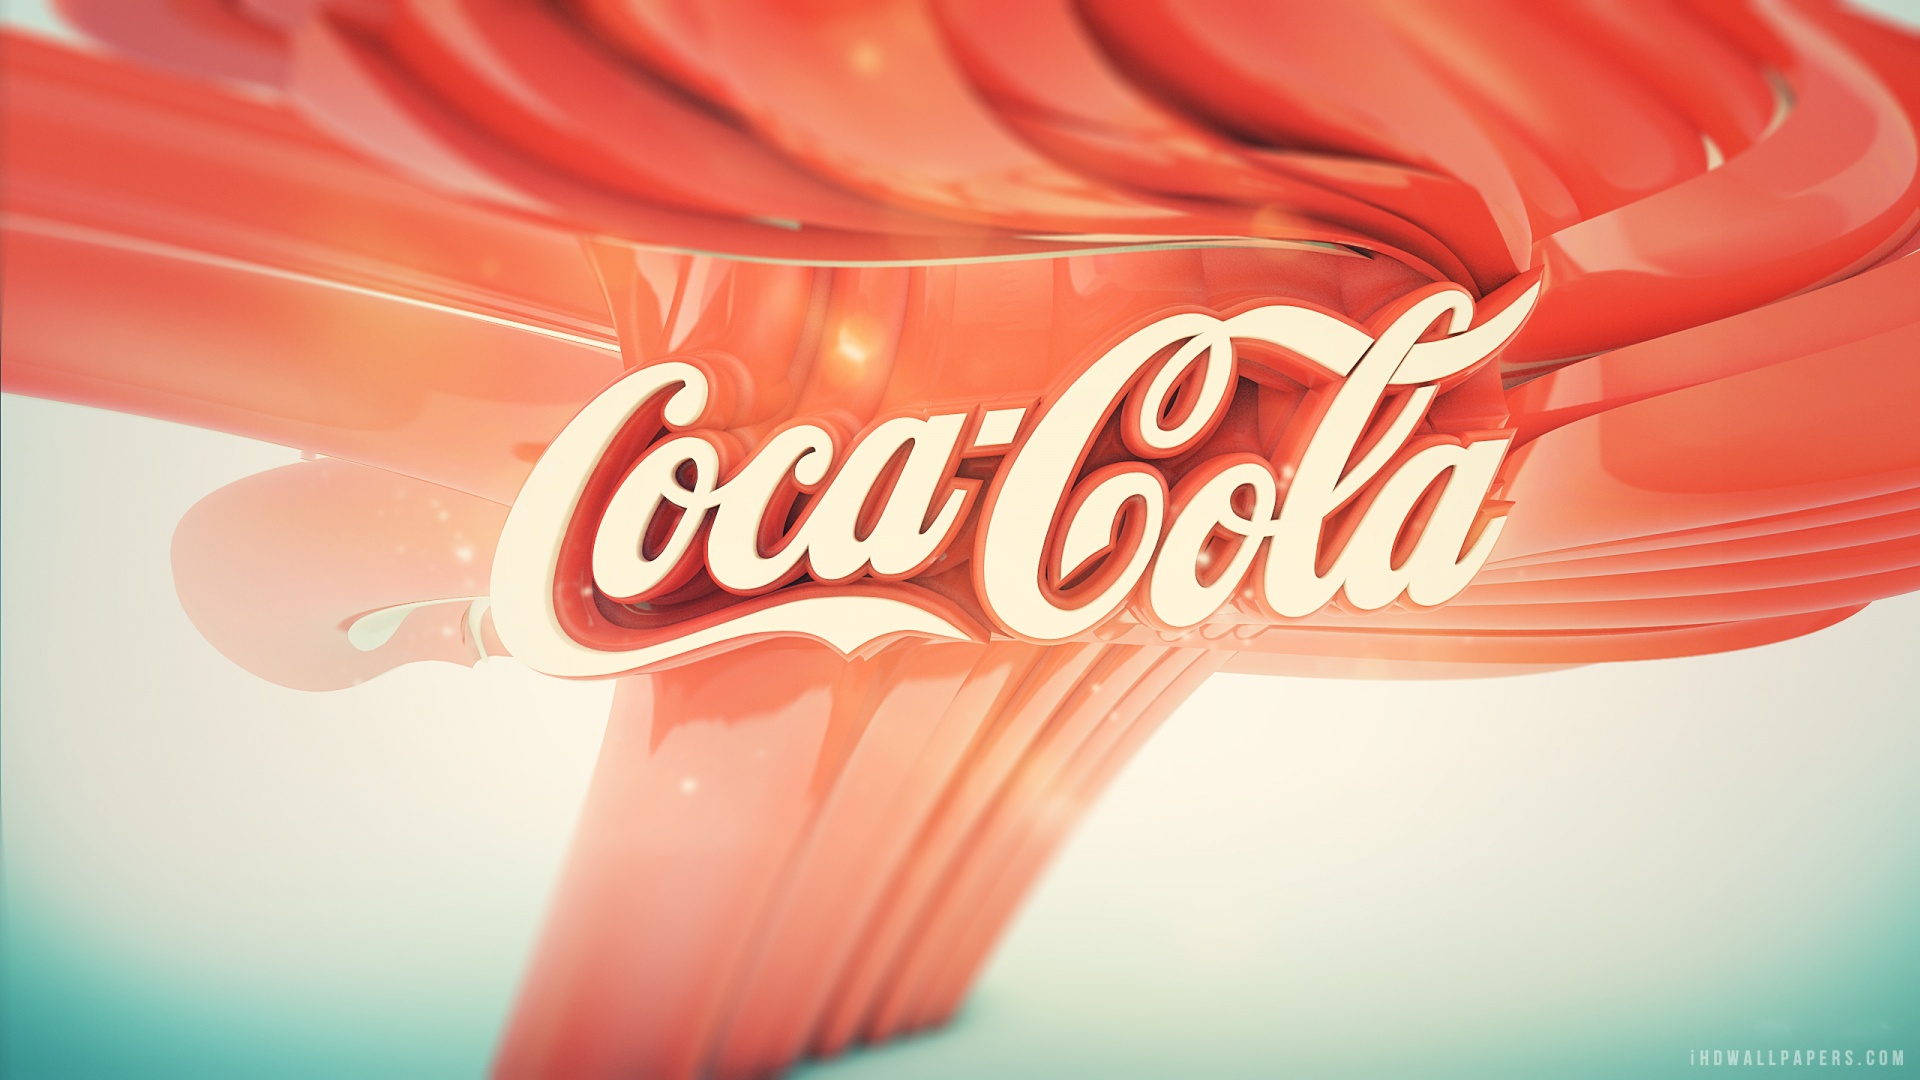 Coca Cola Logo Wallpaper